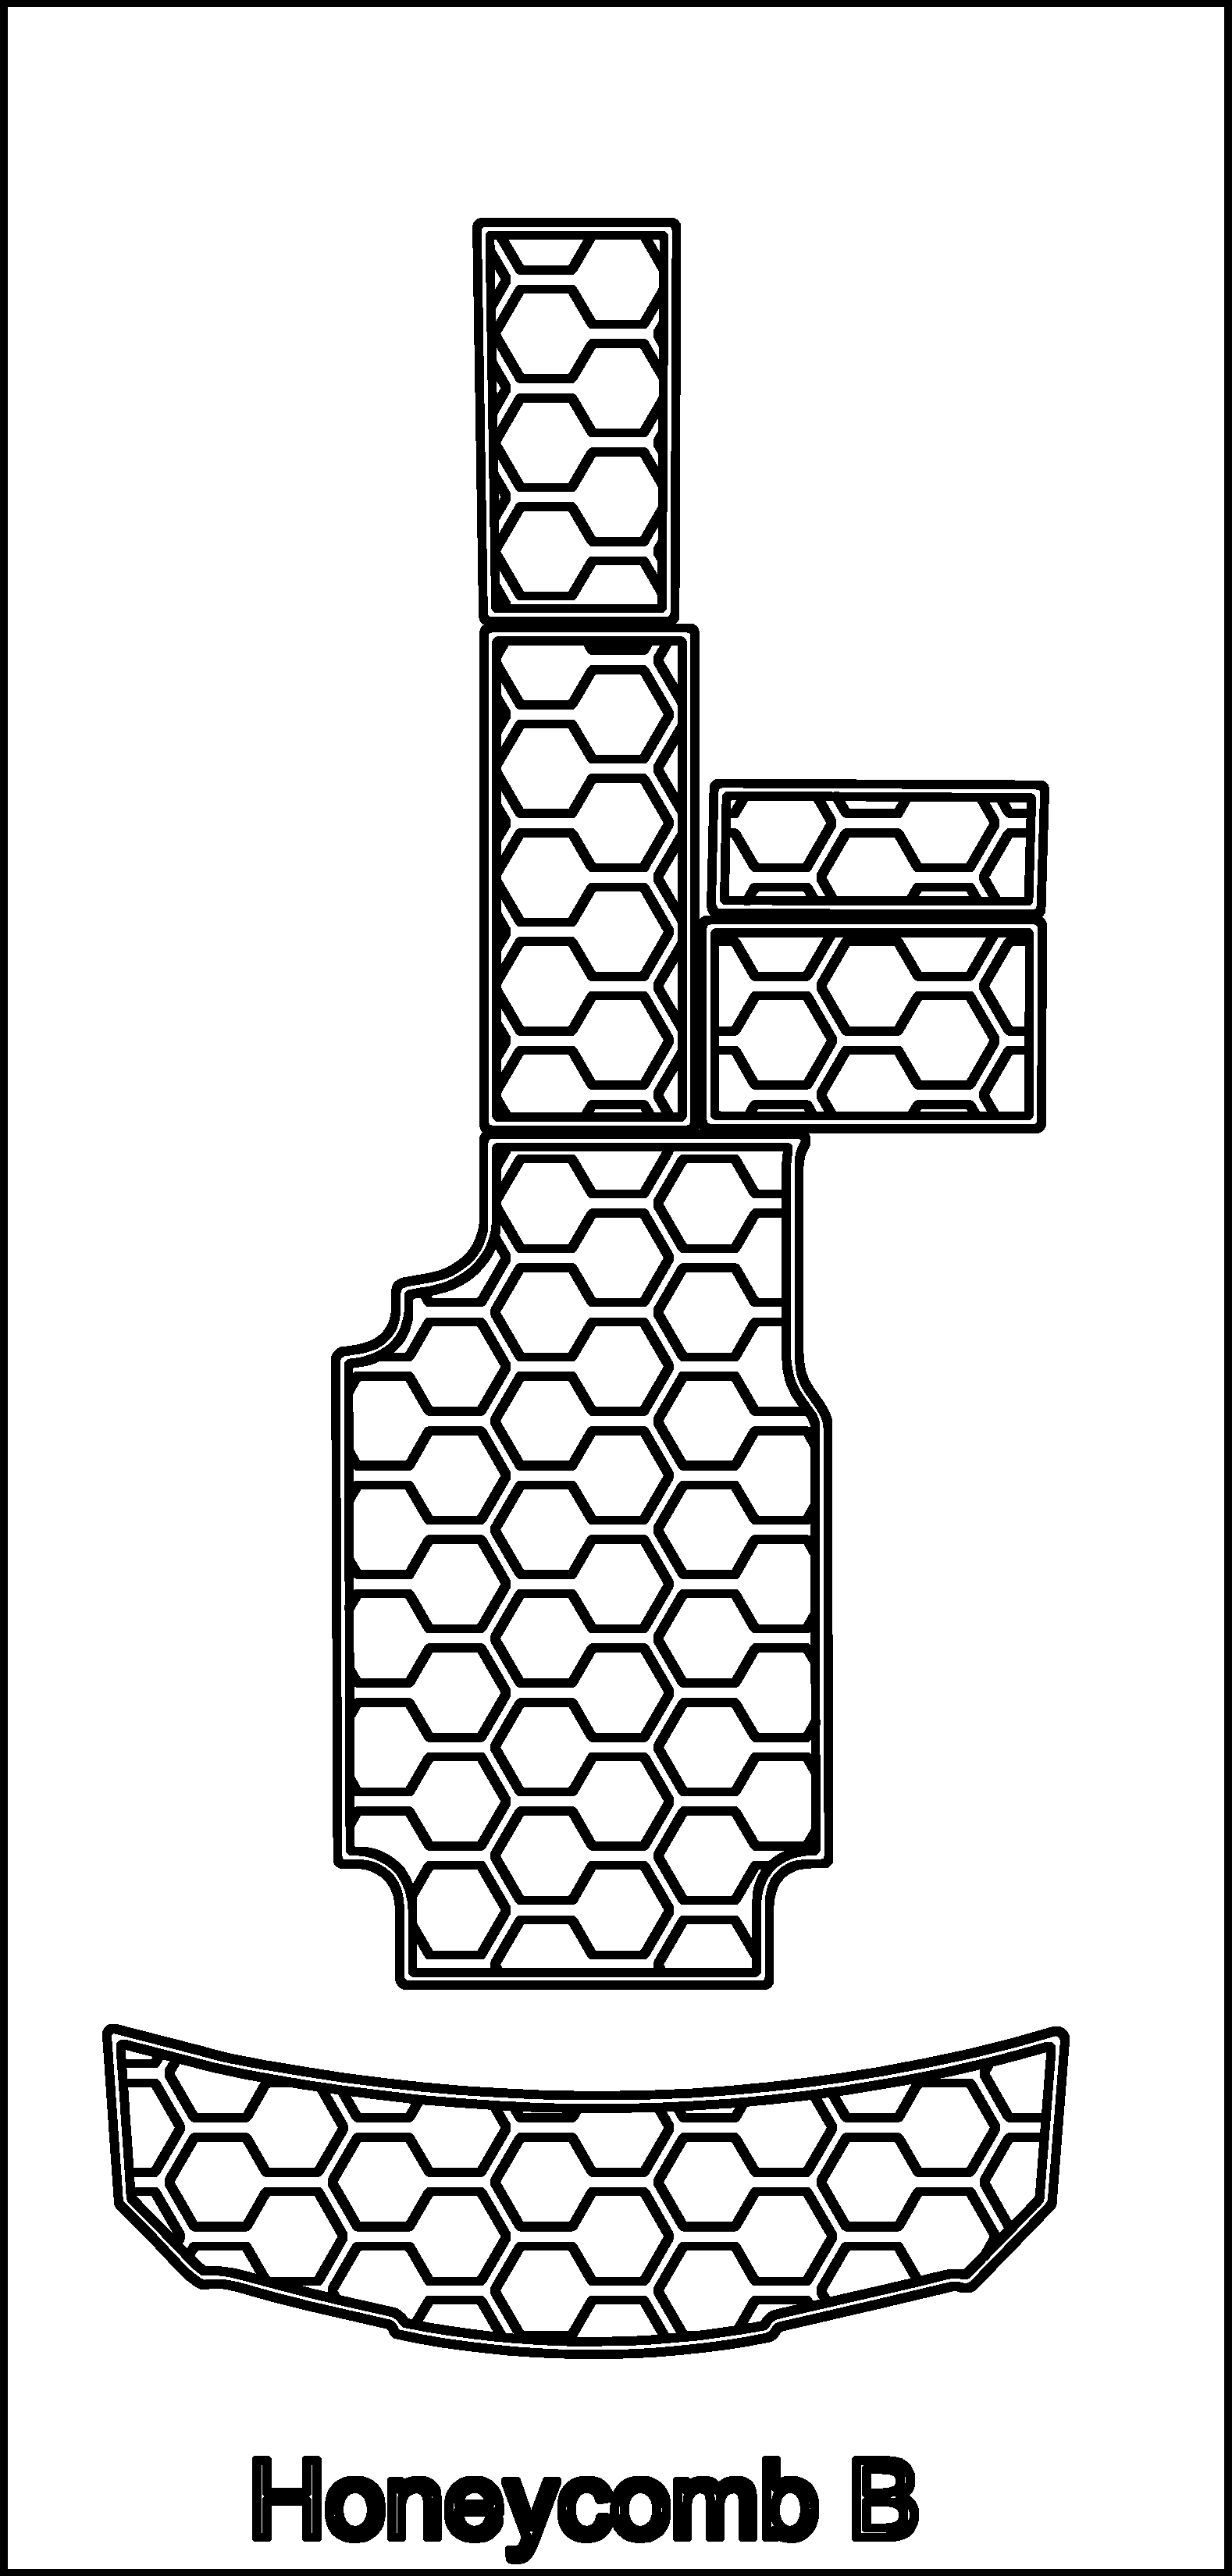 Honeycomb B